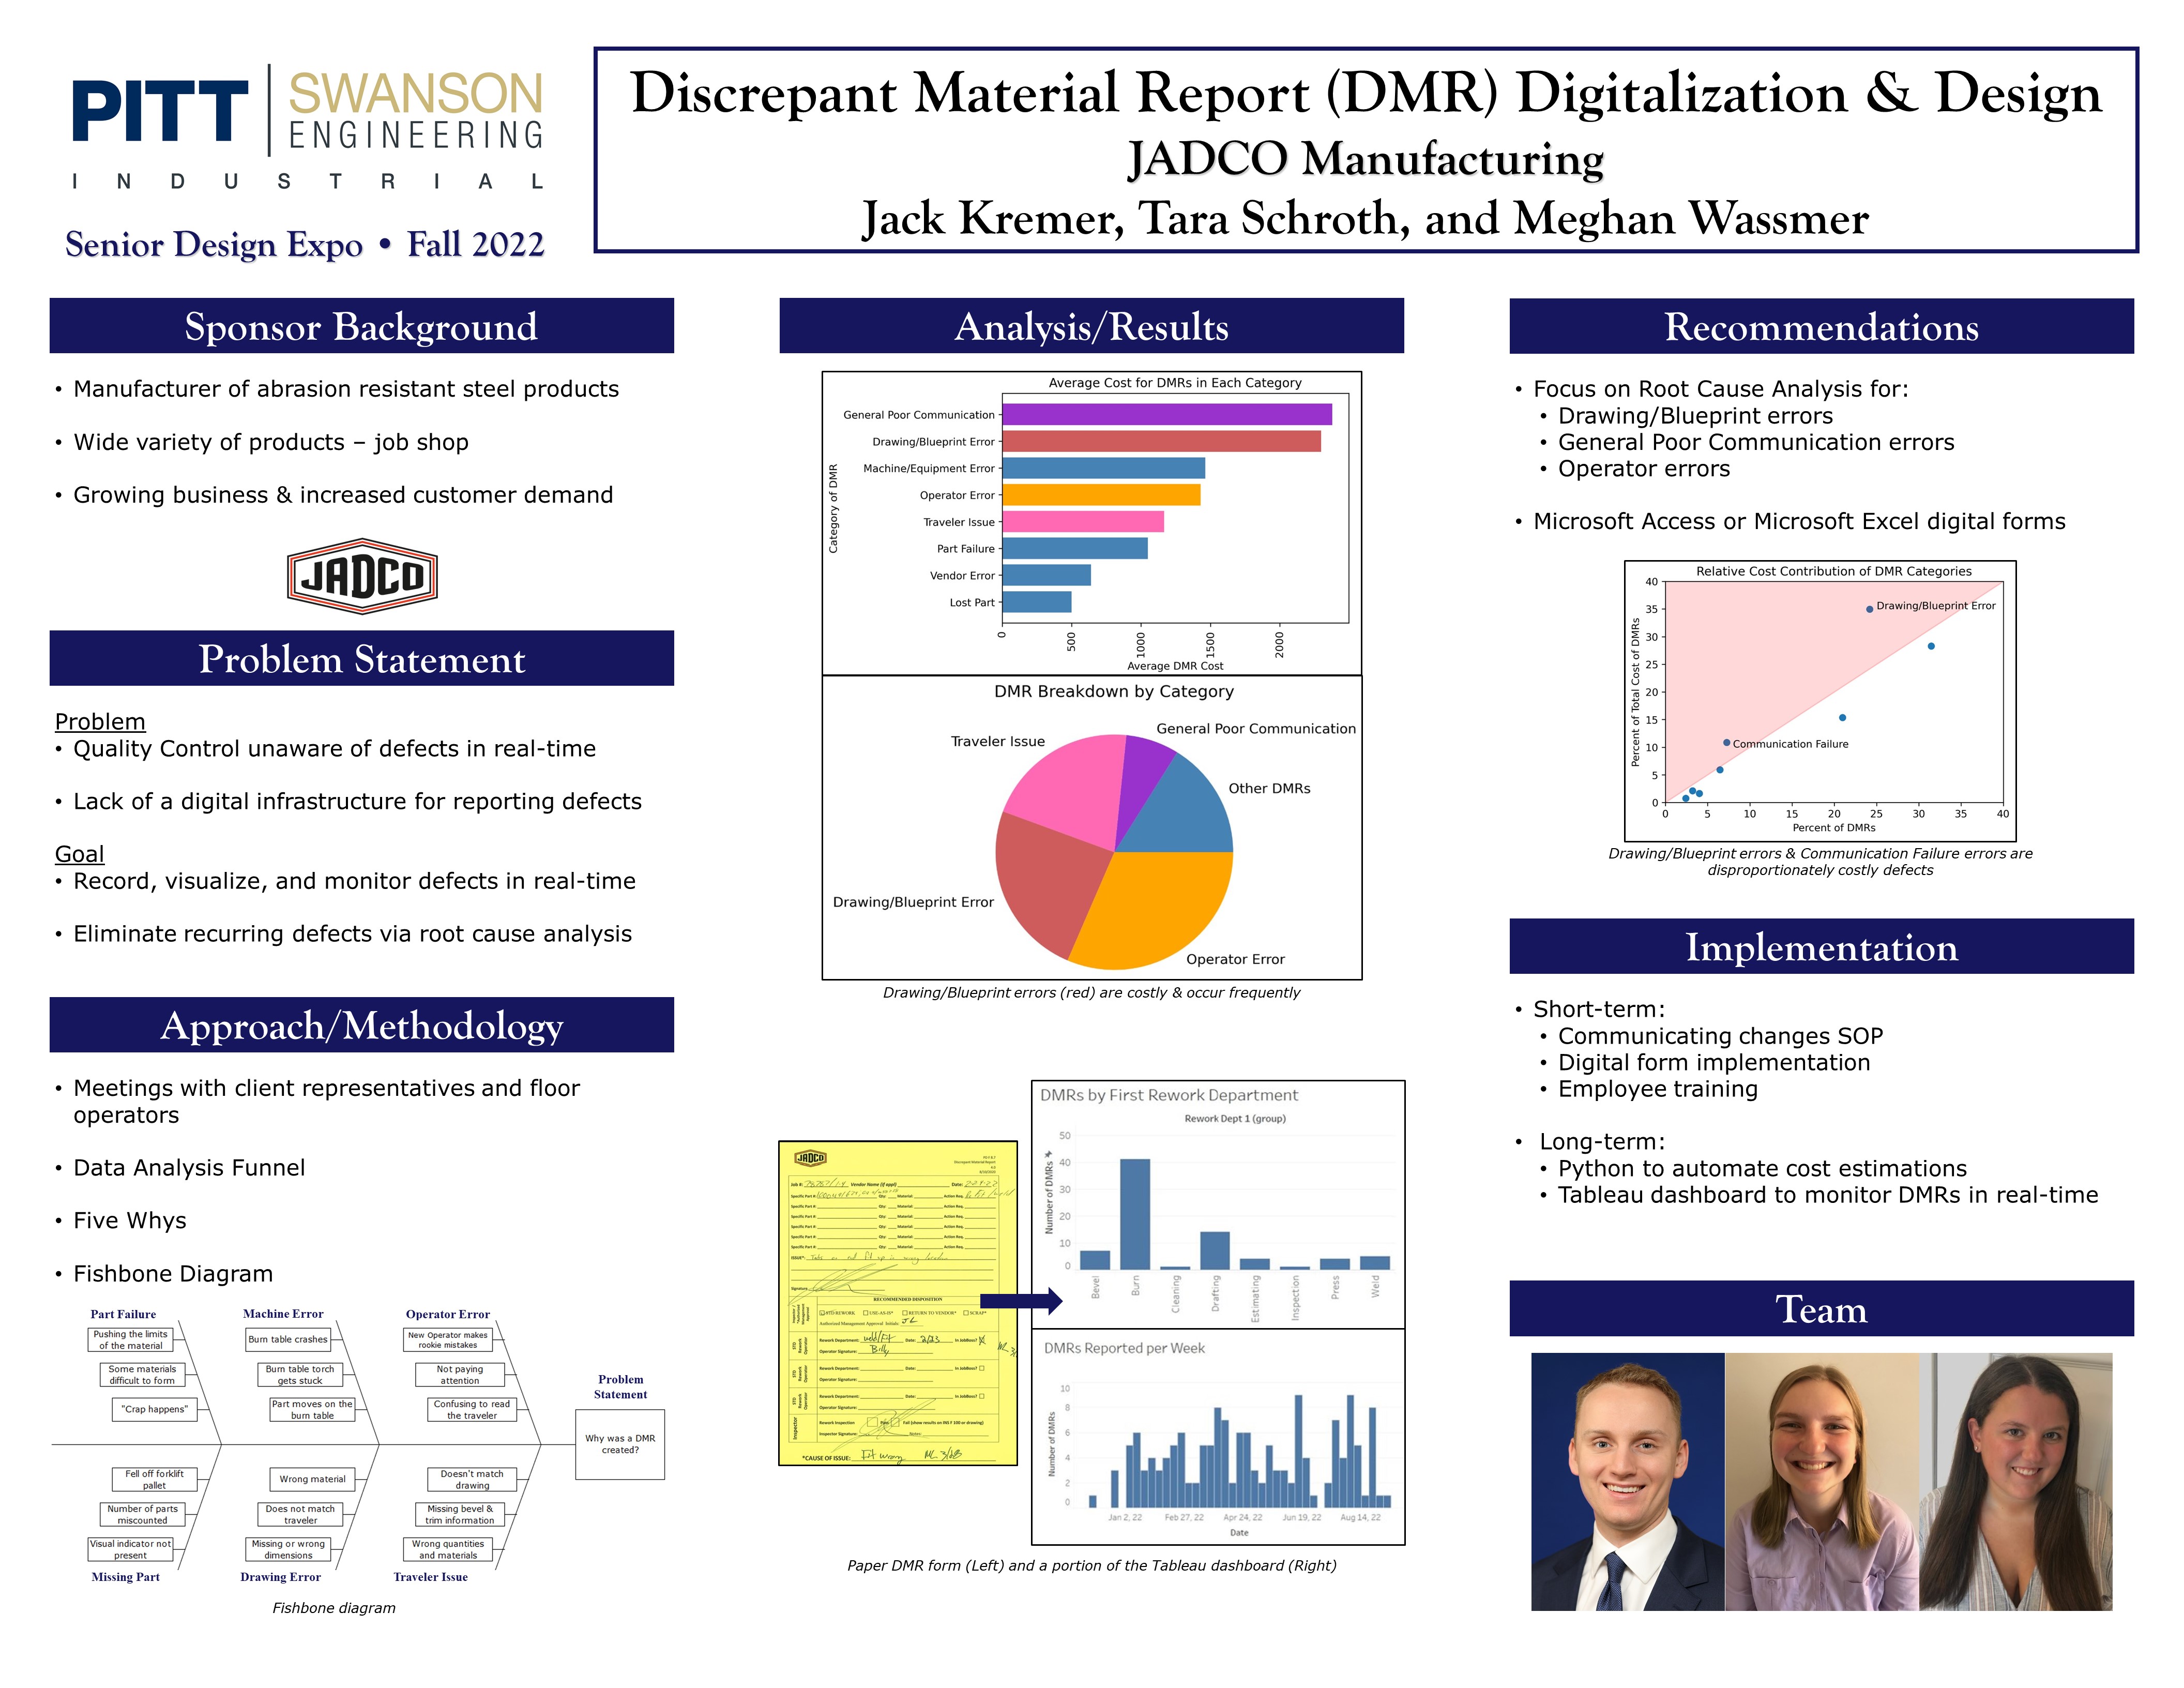 Discrepant Material Report (DMR) Digitalization & Design research poster